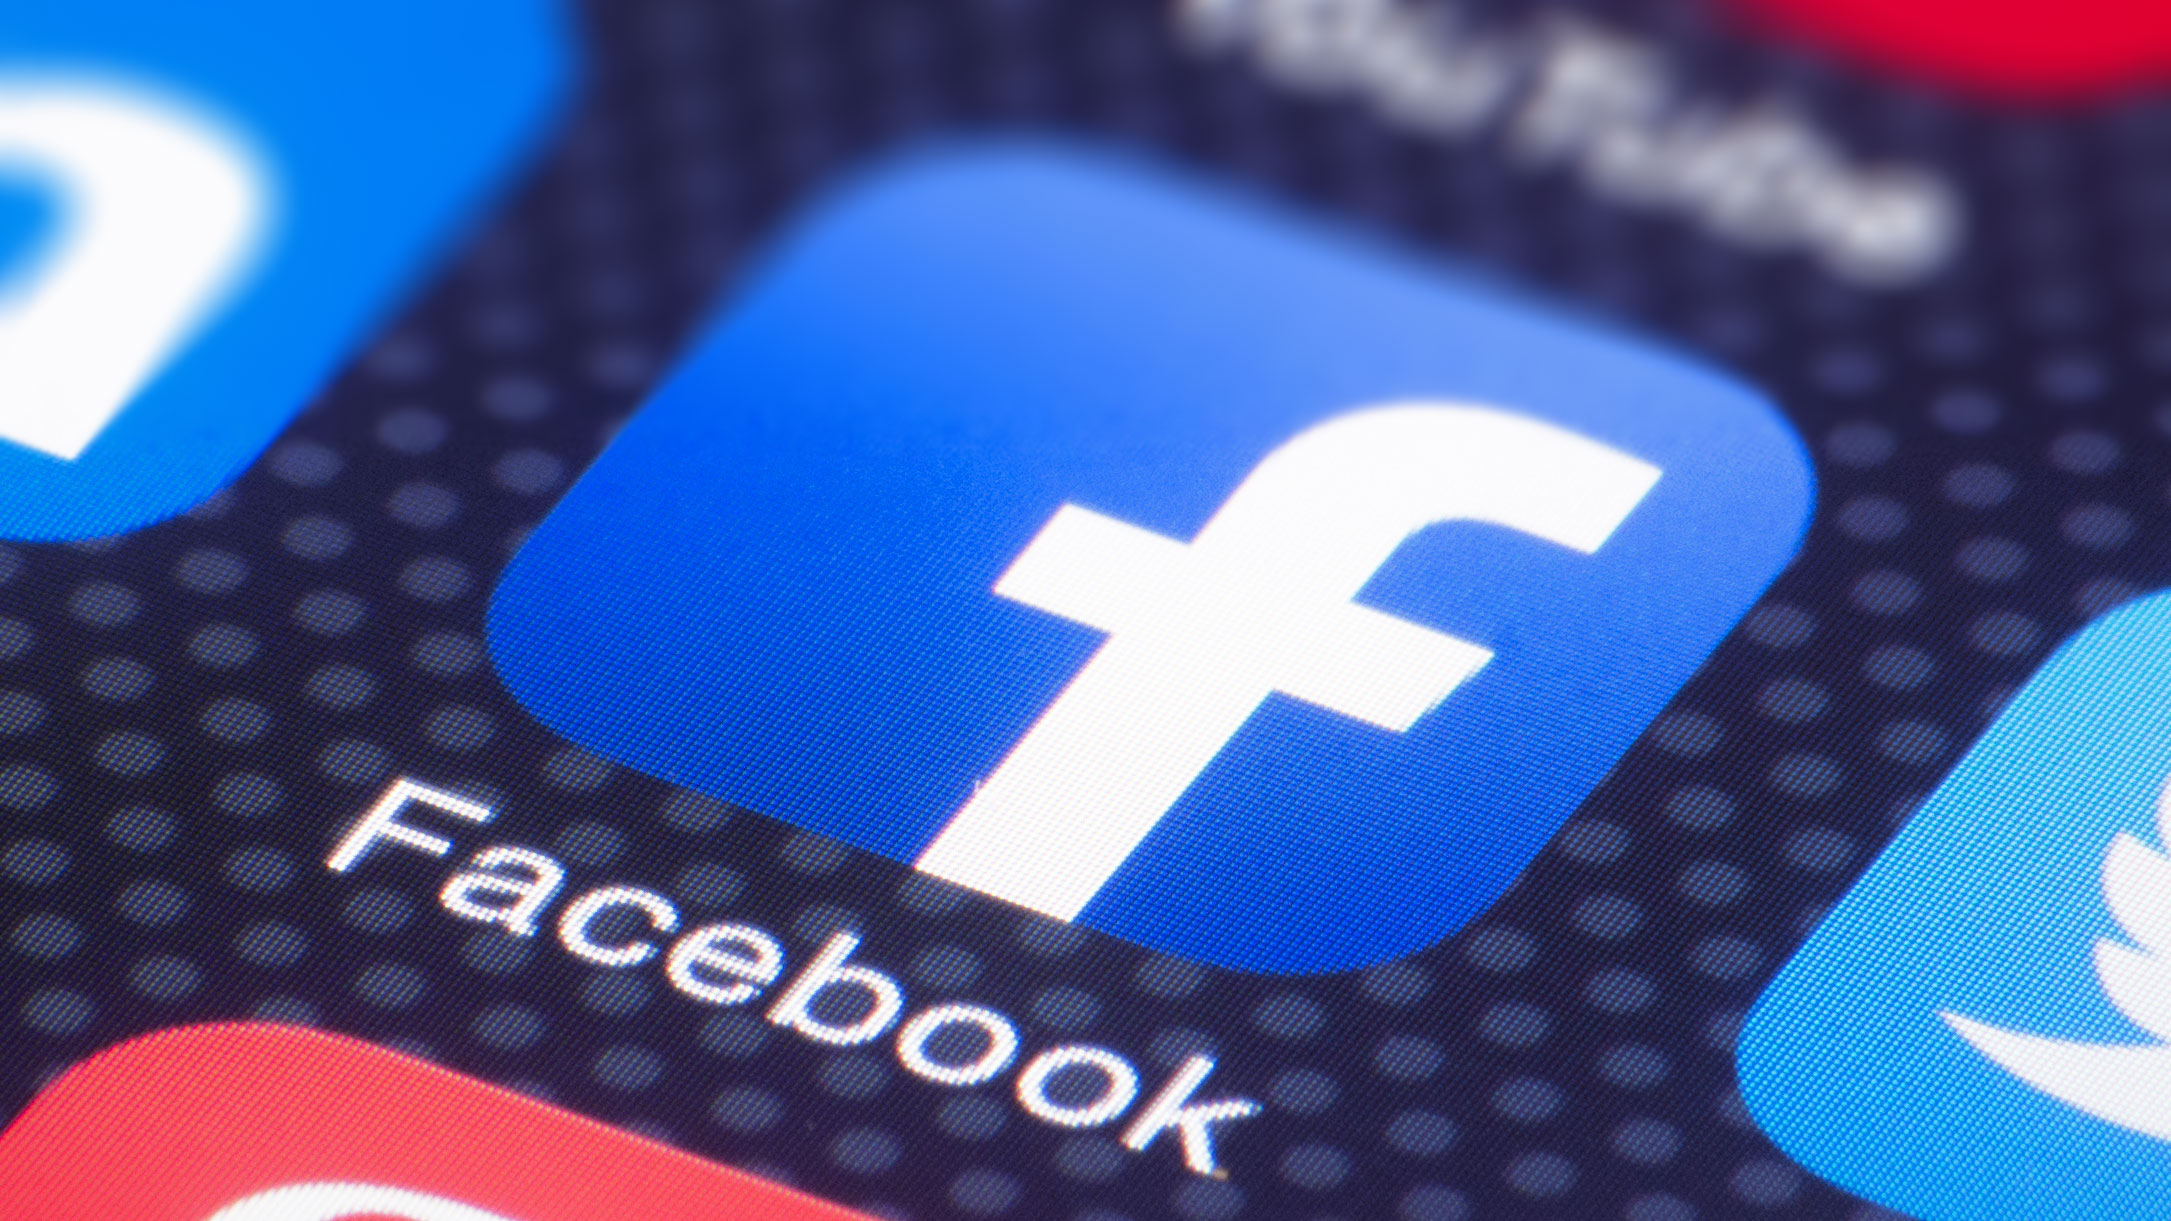 Facebook ka pezulluar dhjetëra aplikacione